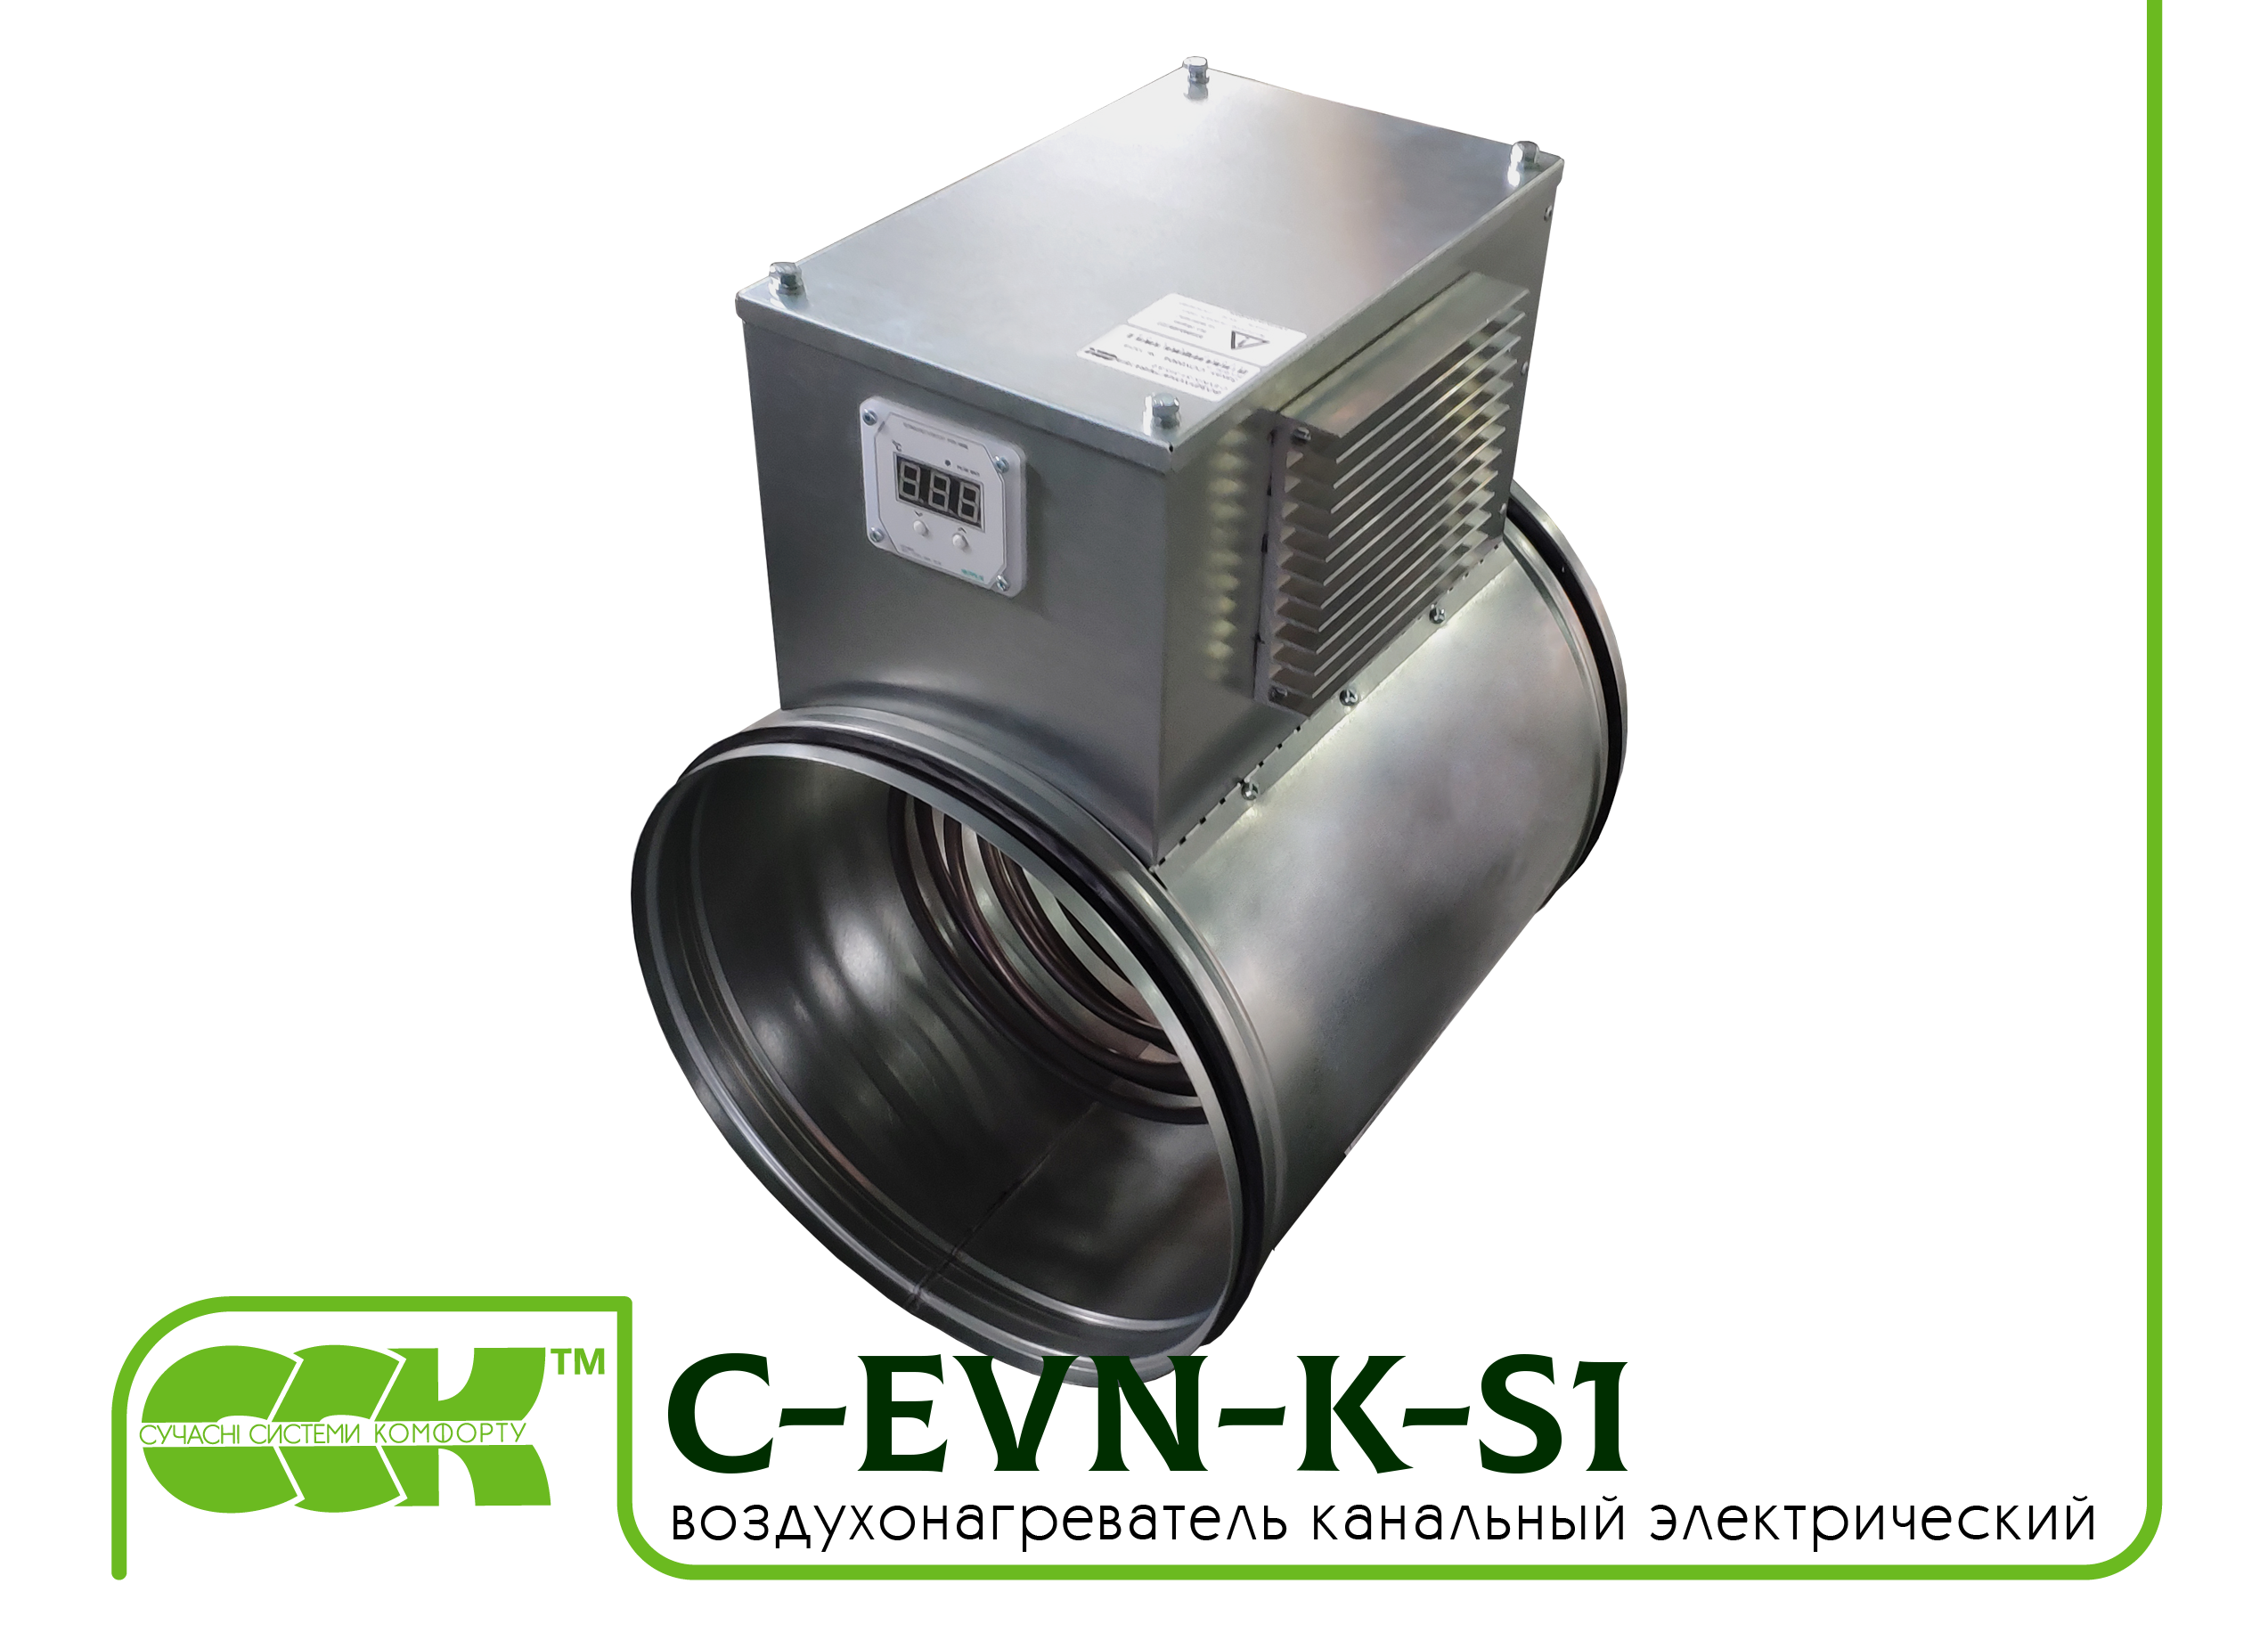 Воздухонагреватель канальный электрический для круглых каналов C-EVN-K-S1-150-3,0